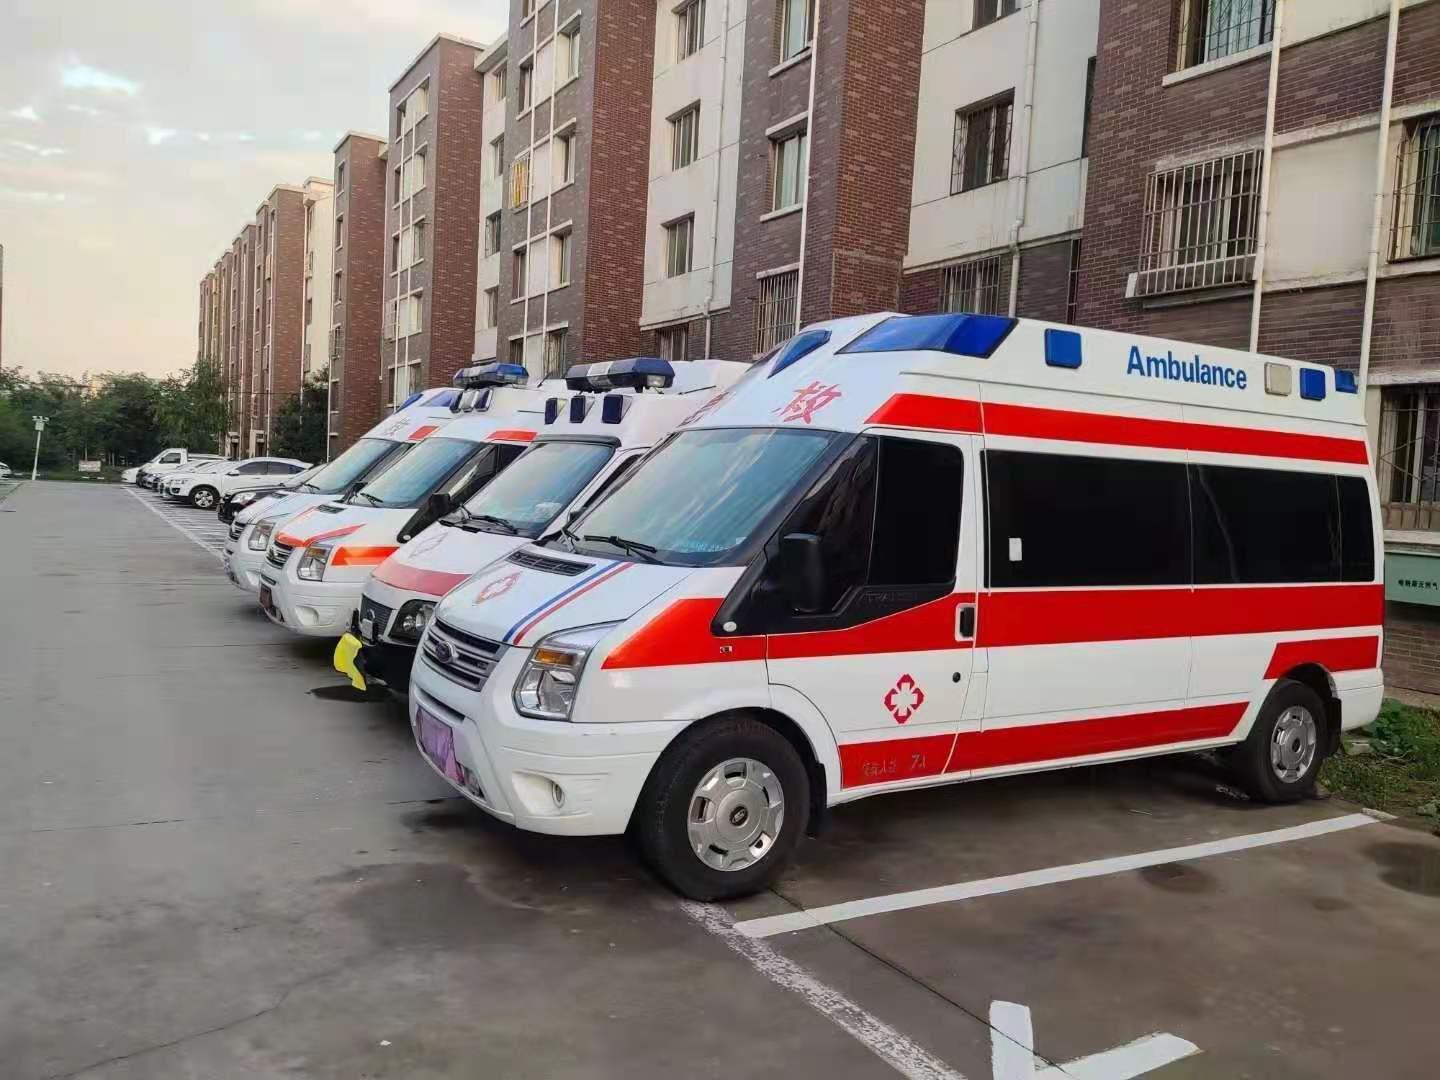 忻州跨省救护车运送病人8元每公里/护送病人回家